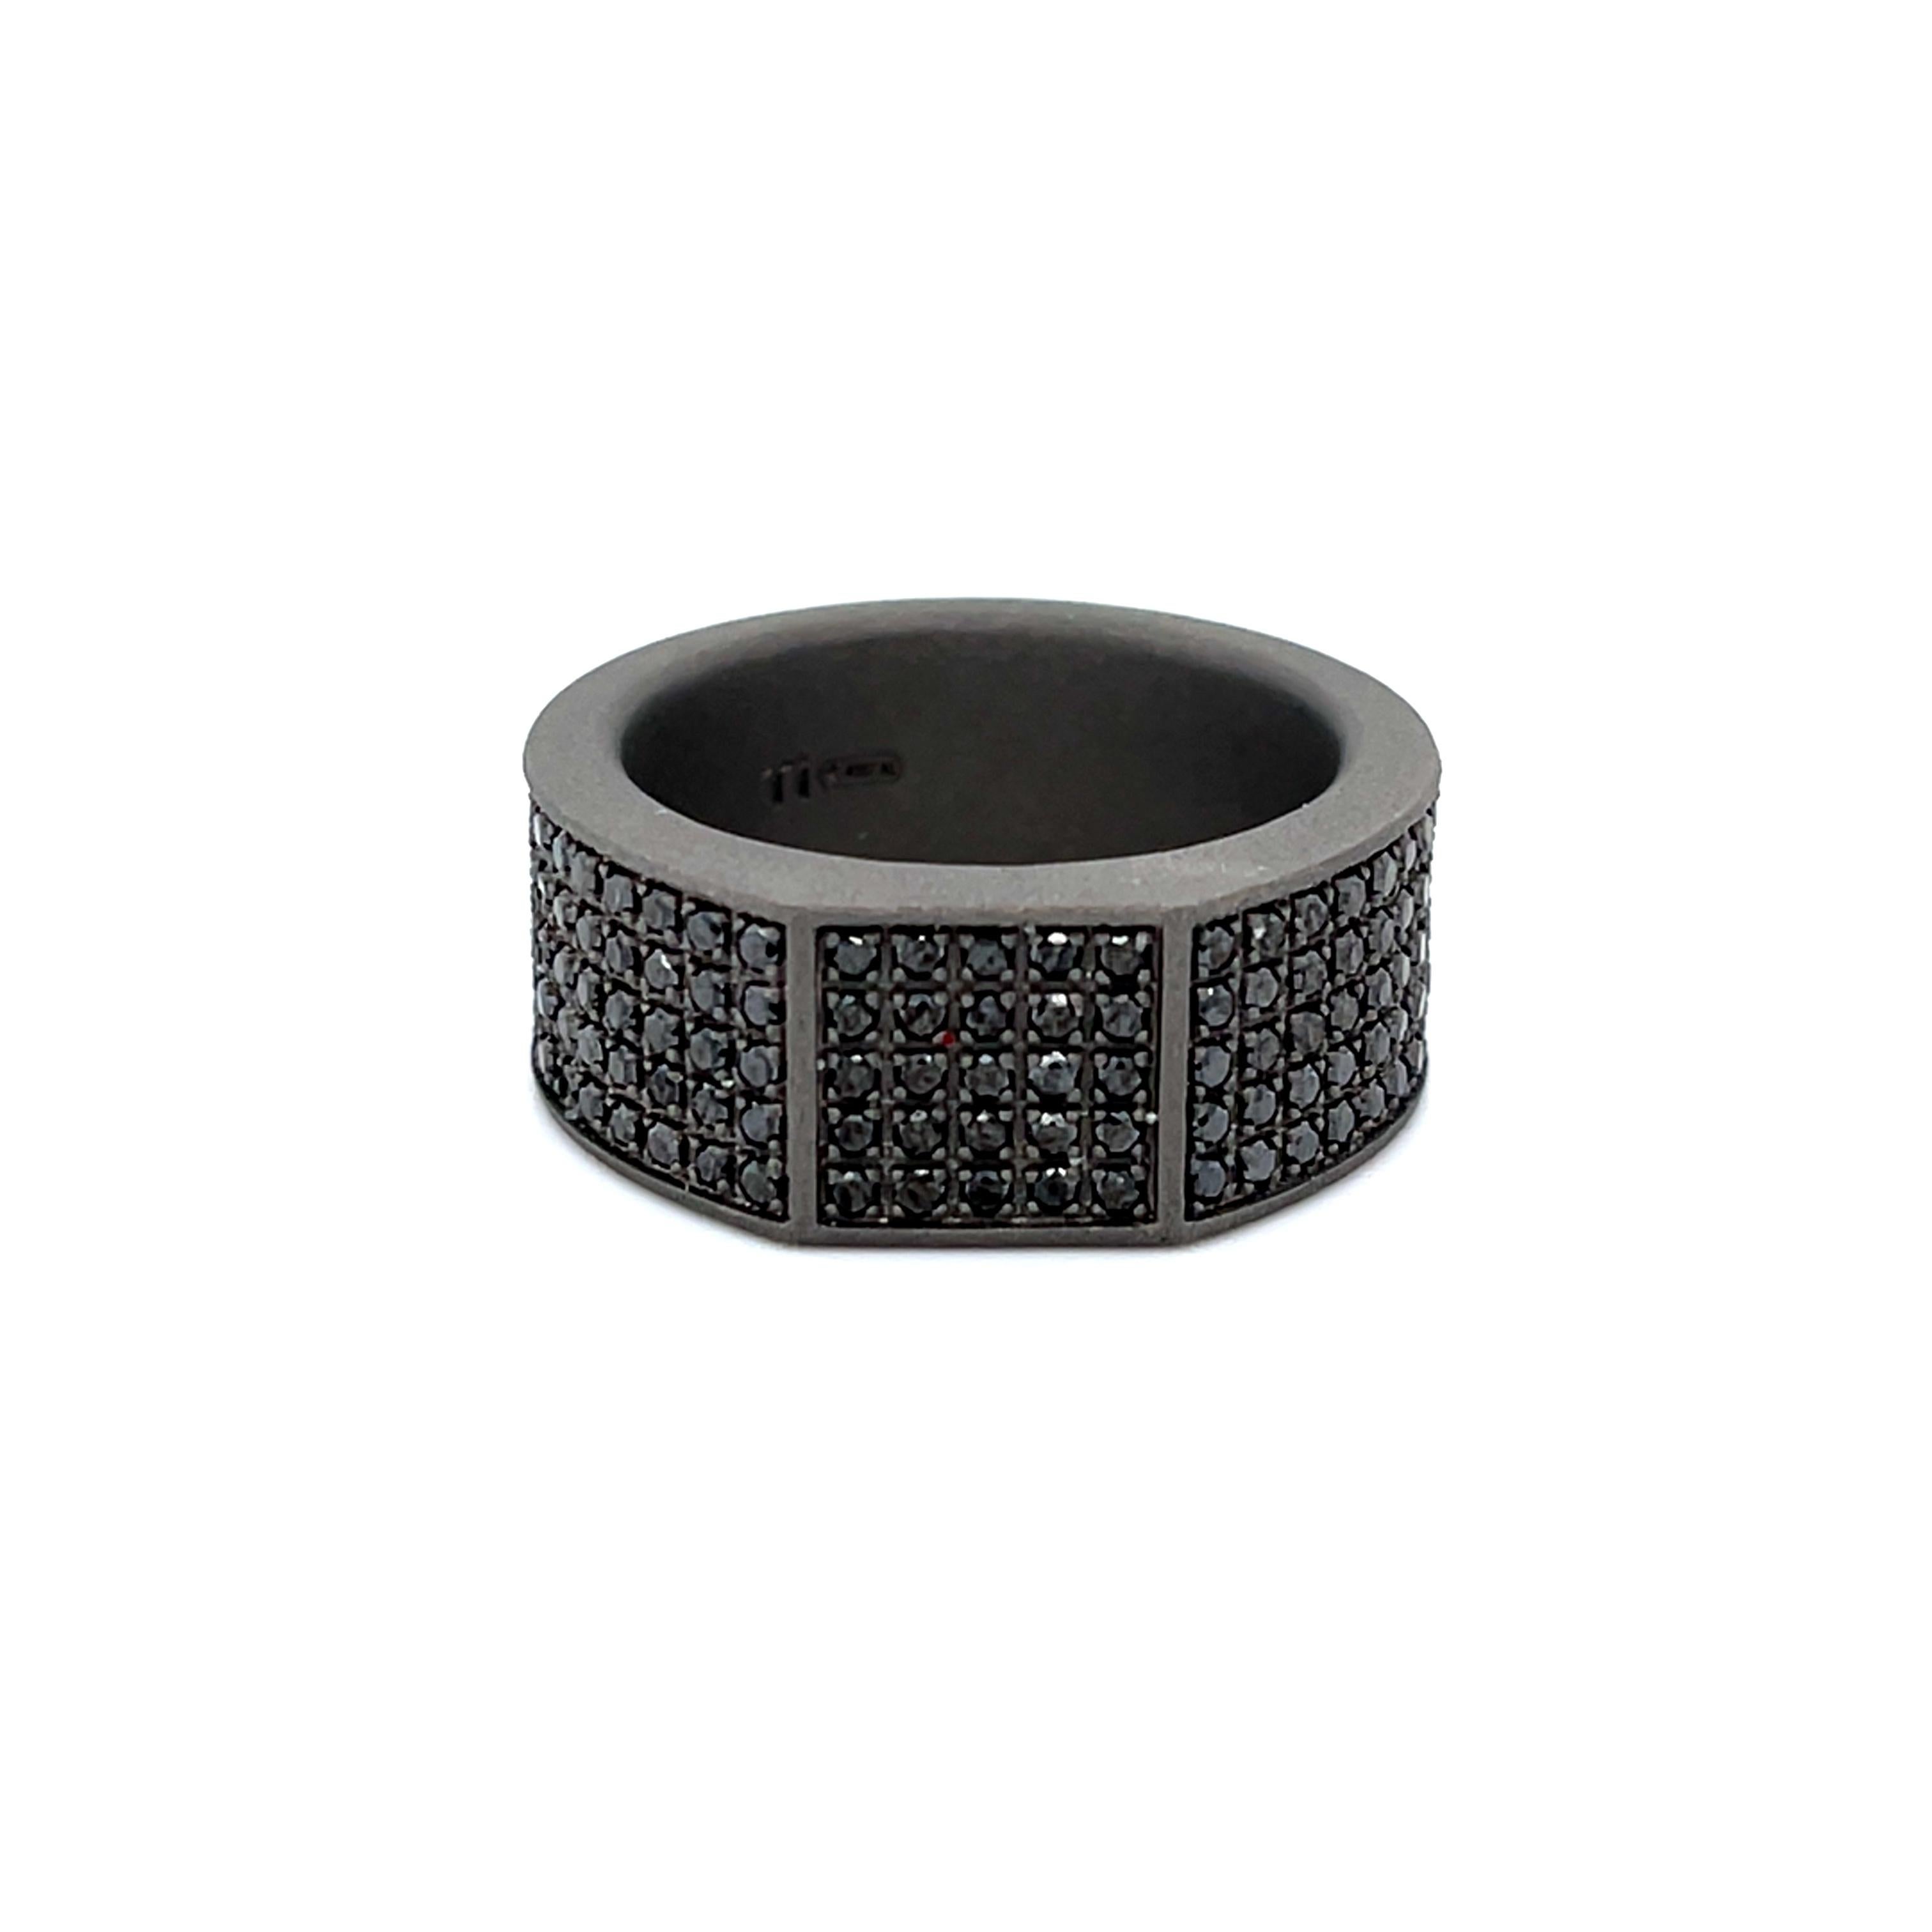 titanium ring with black diamond